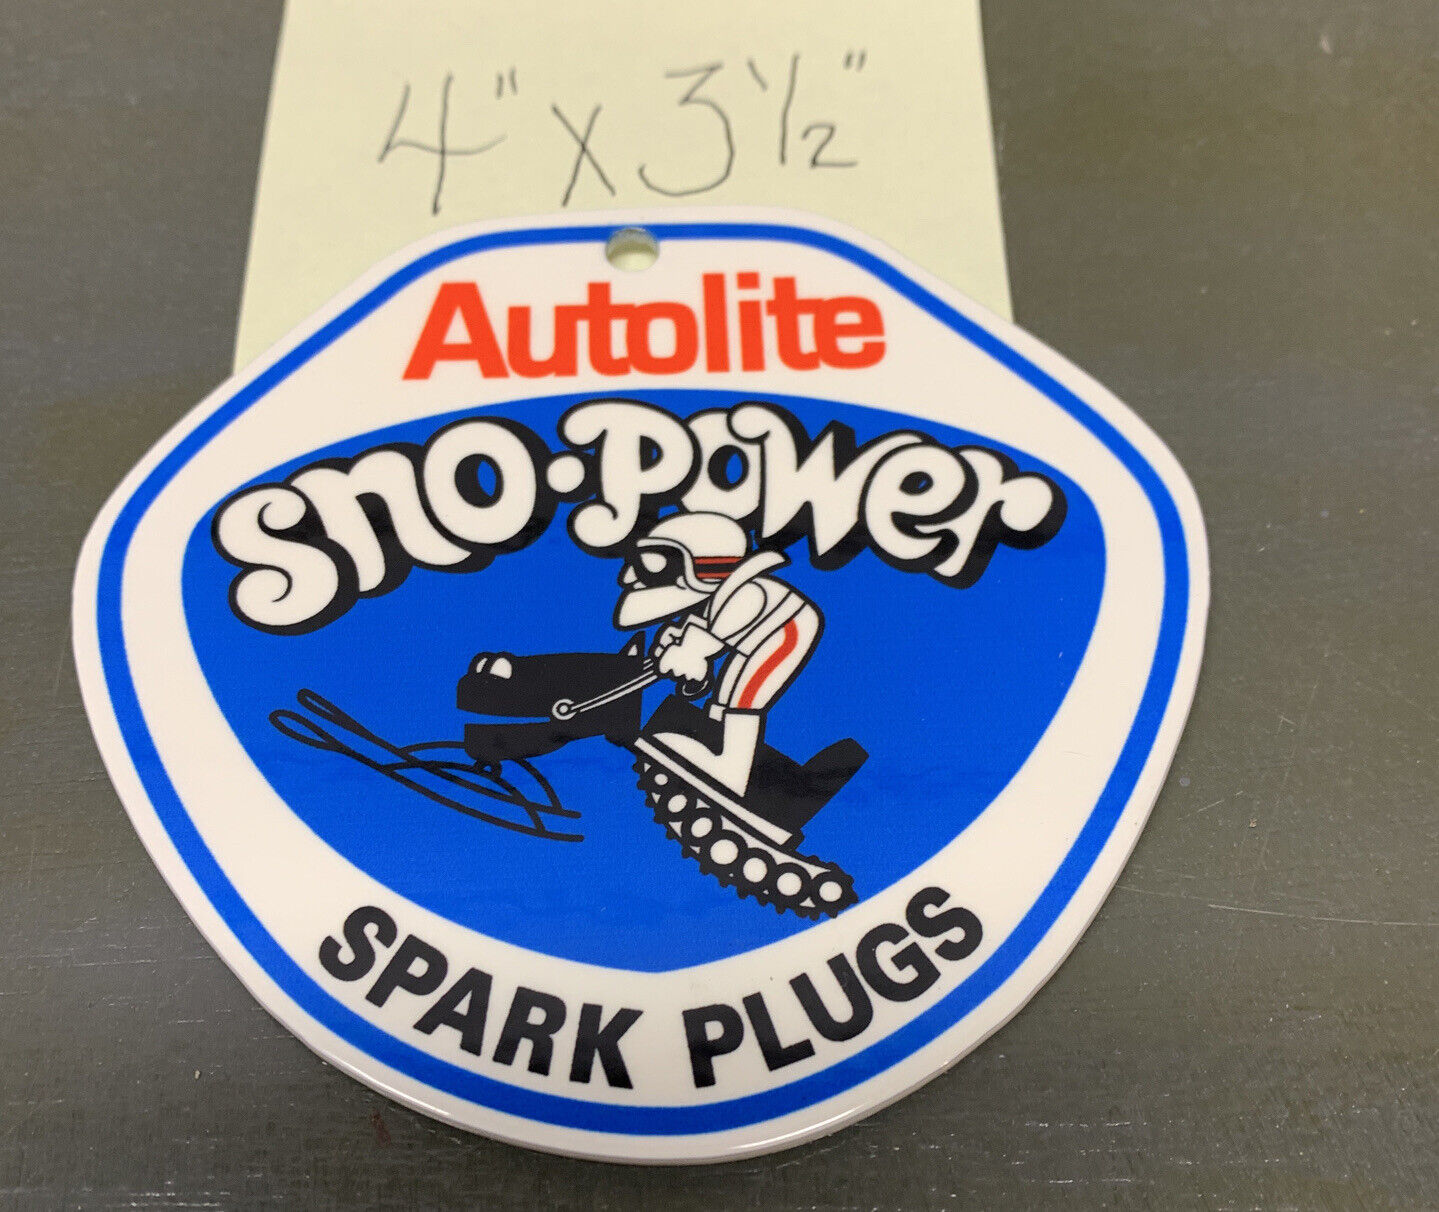 Autolite Spark Plugs Porcelain Like Magnet Service Station Parts Snowmobiles Gas